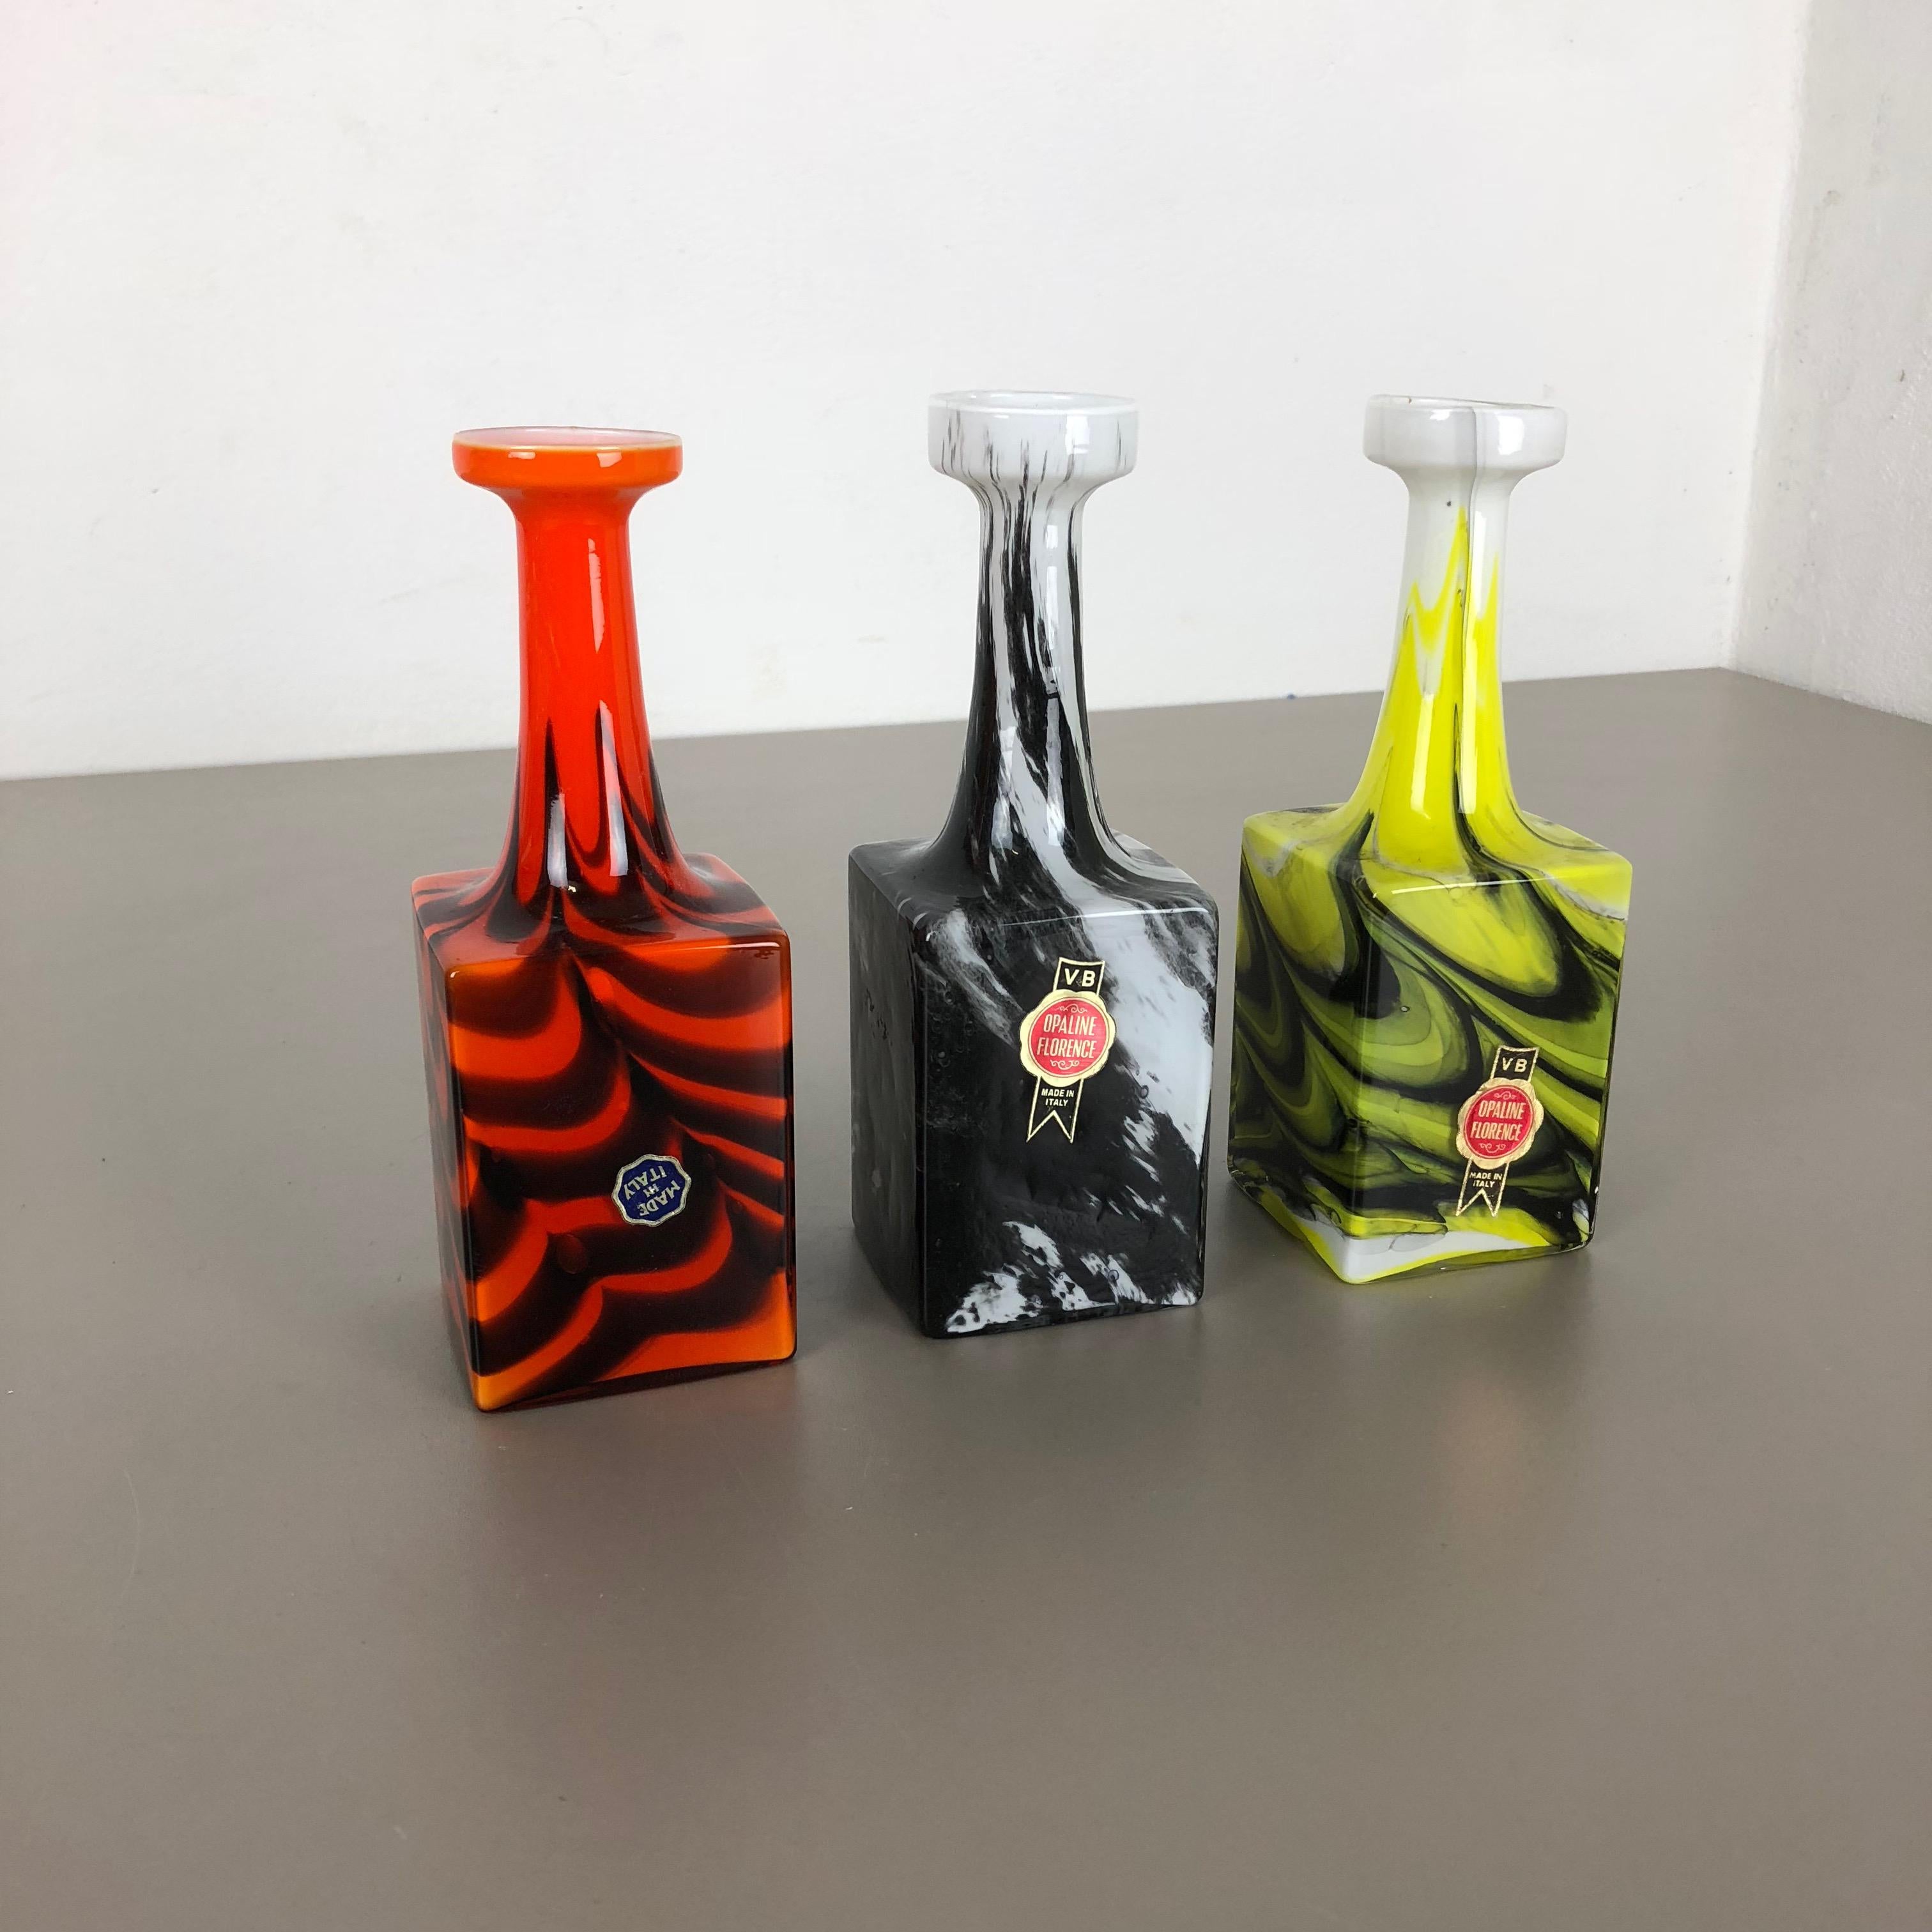 Artikel:

Pop Art Vase 3er Set


Produzent:

Opalin Florenz


Entwurf:

Carlo Moretti



Jahrzehnt:

1970s




Originales mundgeblasenes Vasen-Set aus den 1970er Jahren, hergestellt in Italien von Opaline Florenz. Hergestellt